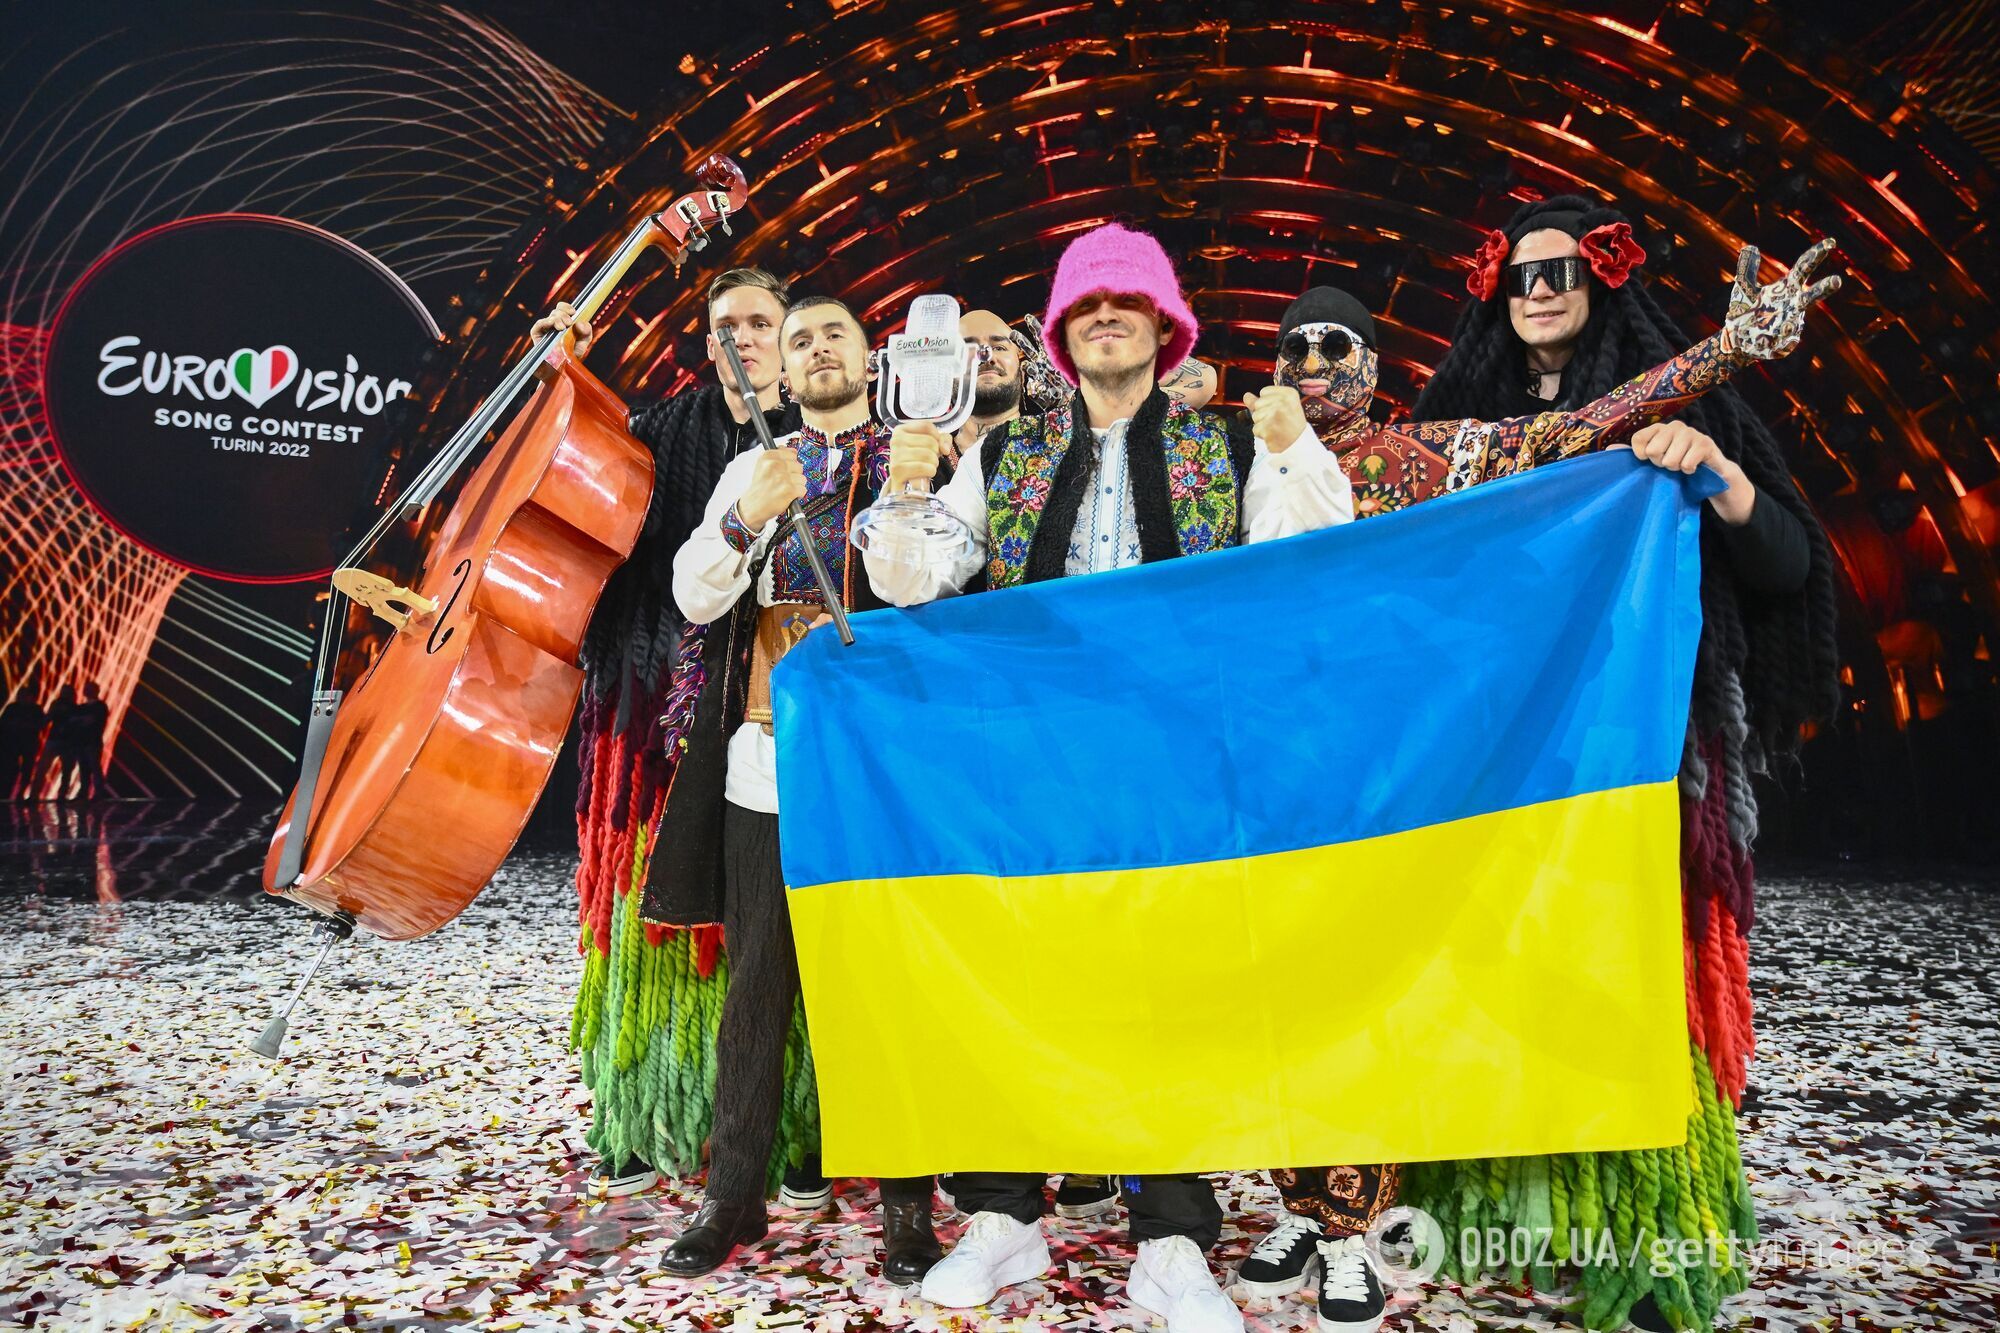 "Суспільне мовлення" и BBC договорились провести шоу от имени Украины